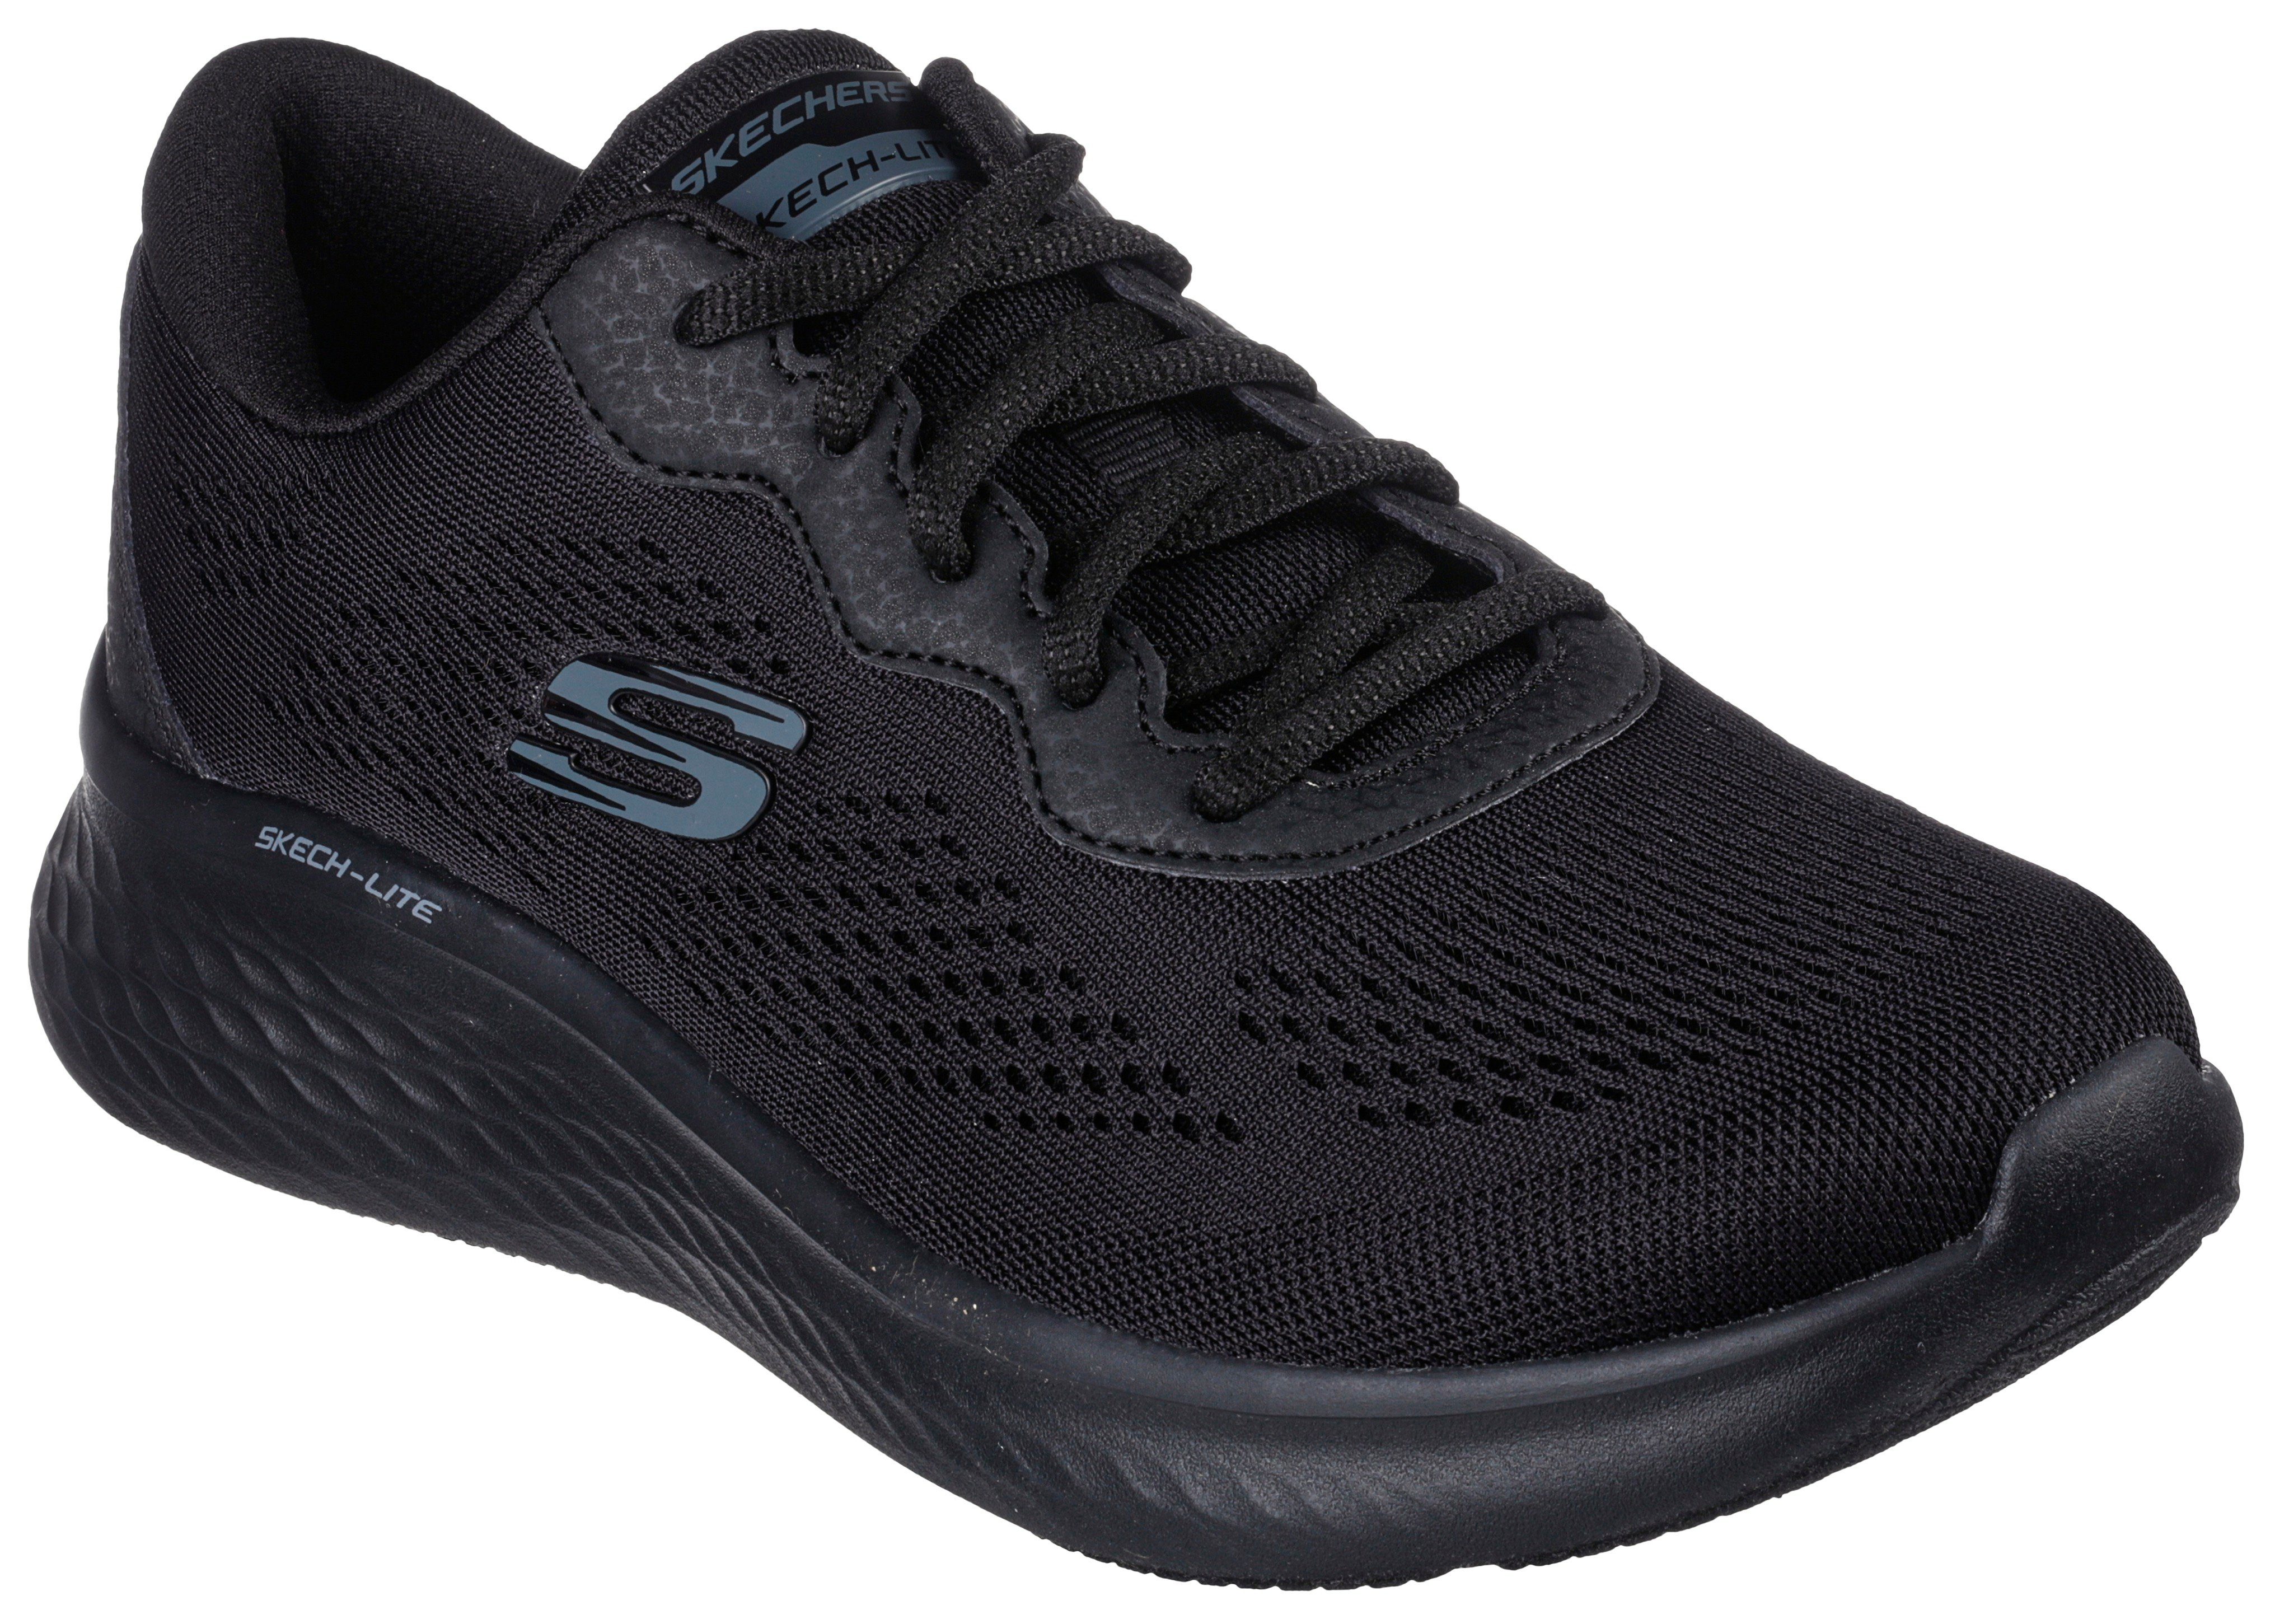 Skechers SKECH-LITE PRO - Sneaker für Maschinenwäsche geeignet schwarz